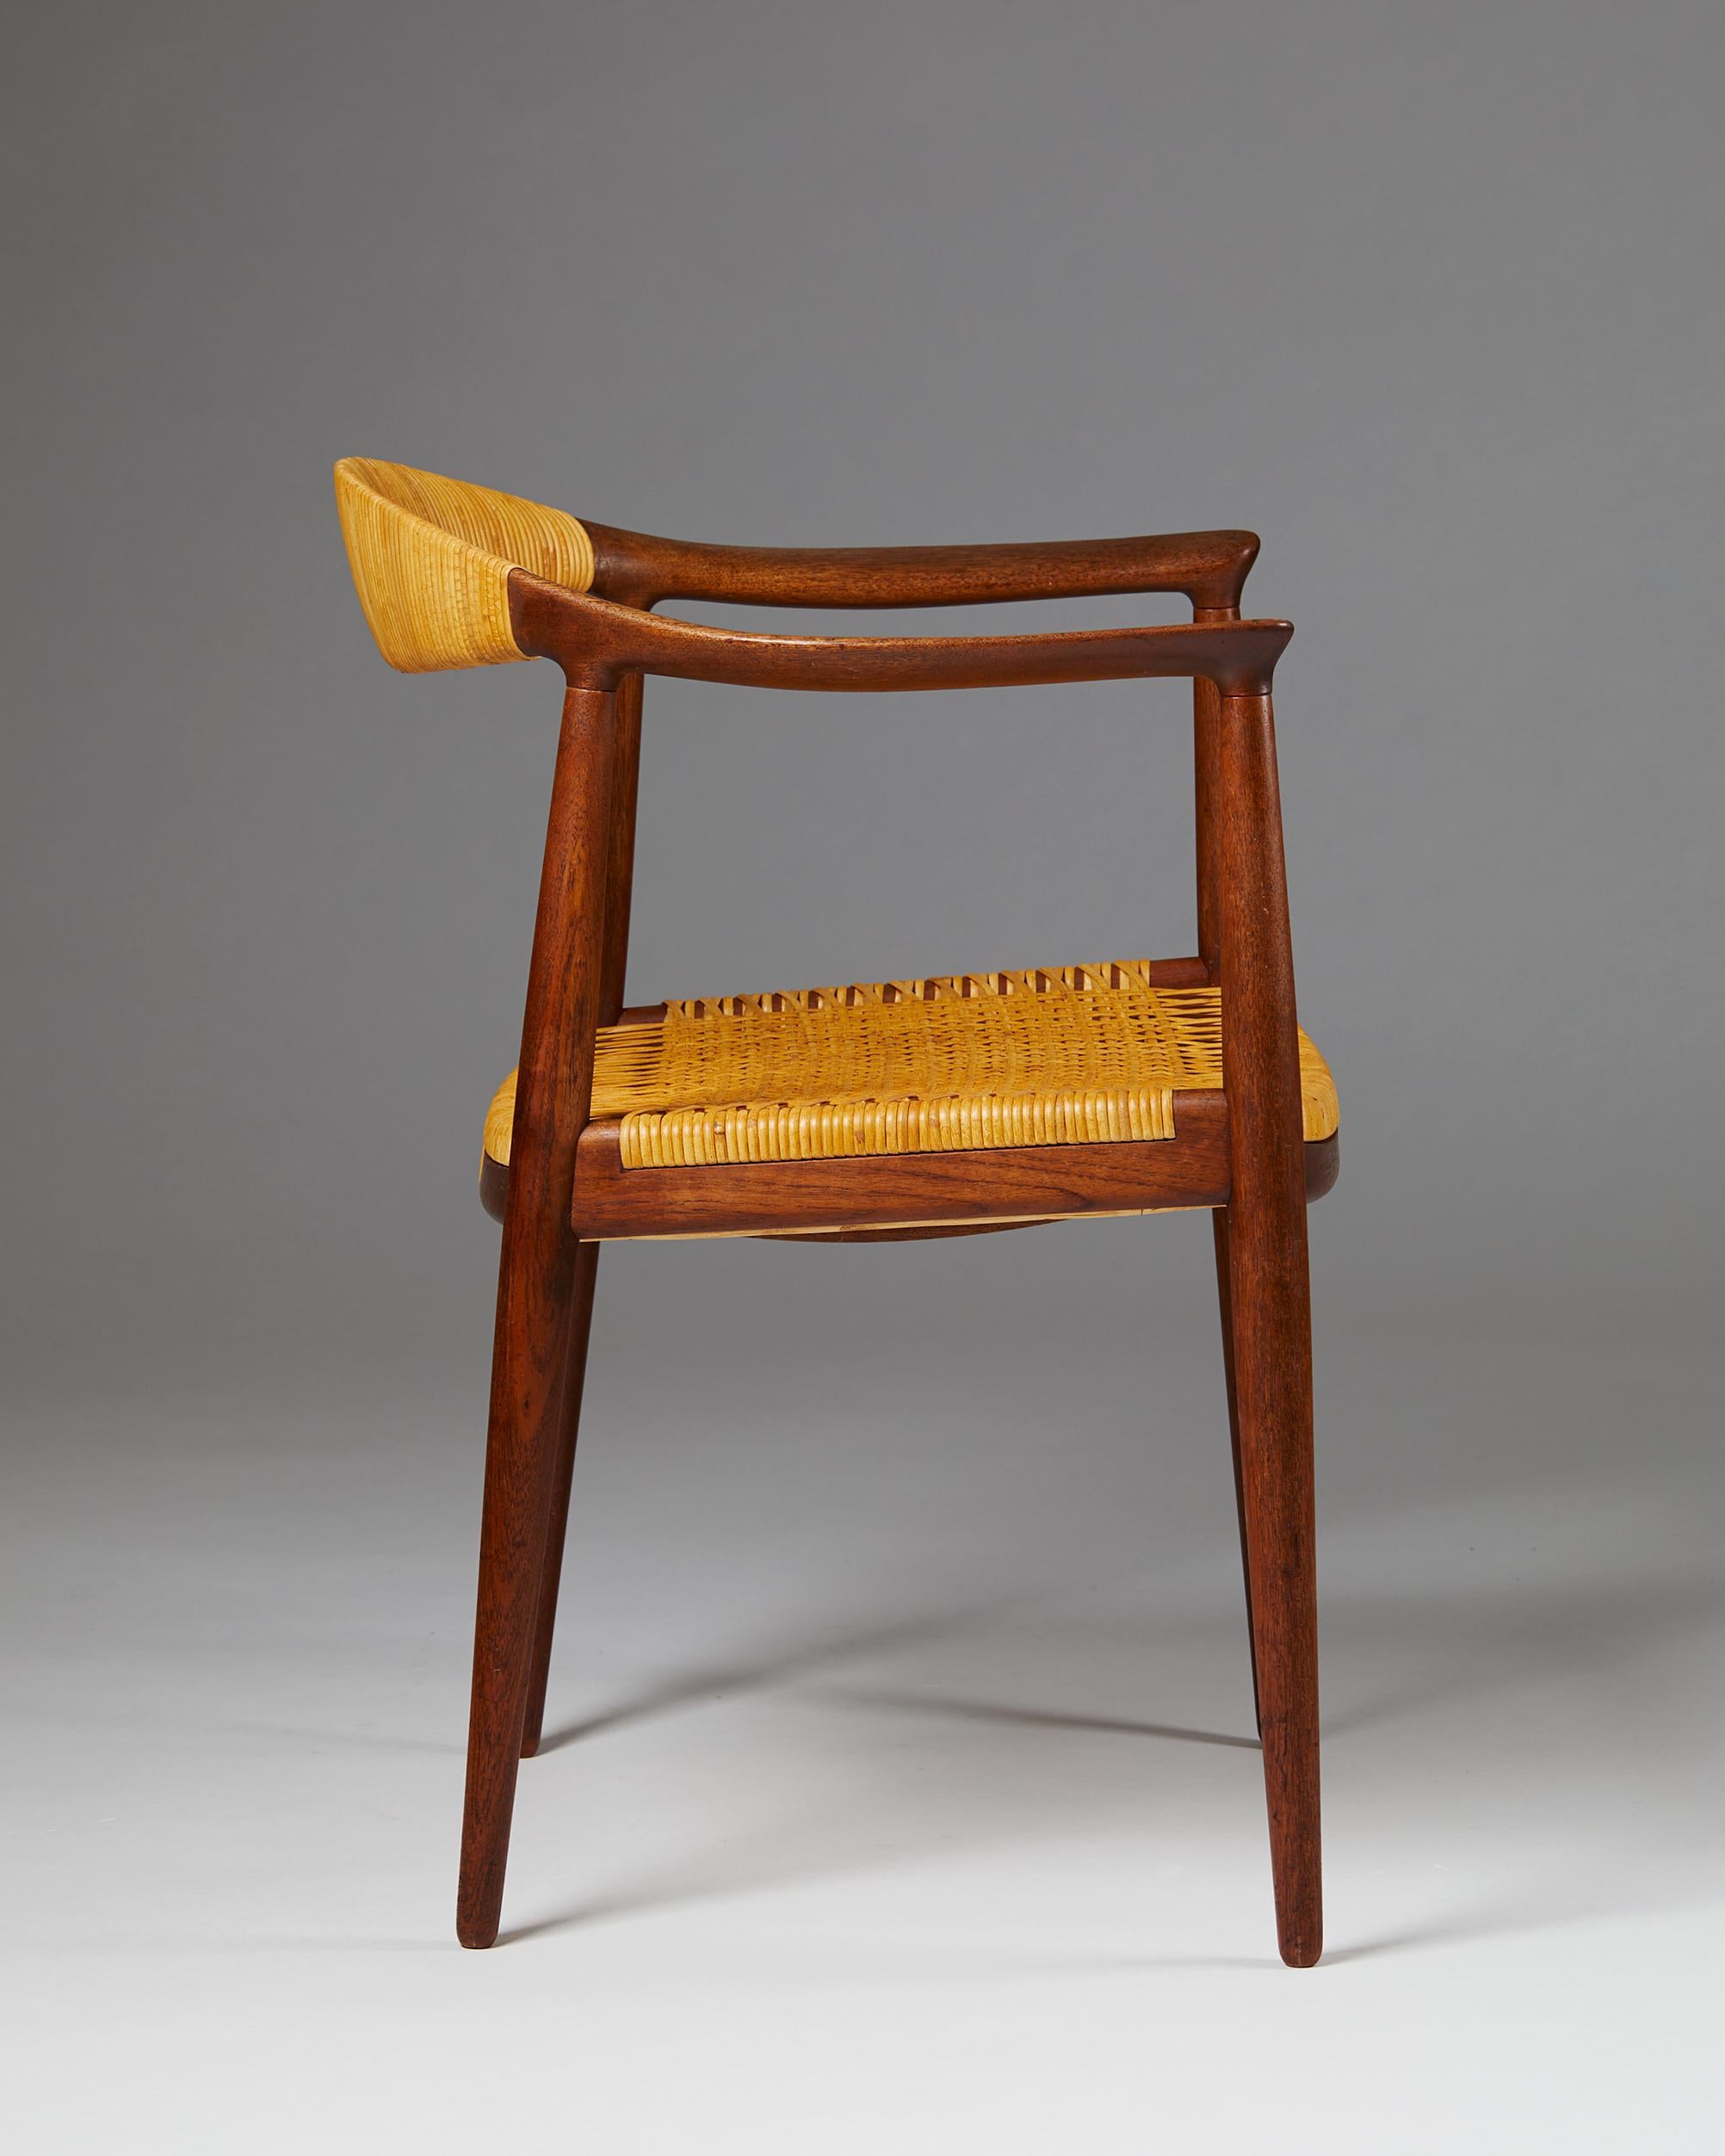 Cane Armchair “The Chair”, Designed by Hans Wegner for Johannes Hansen, Denmark, 1949